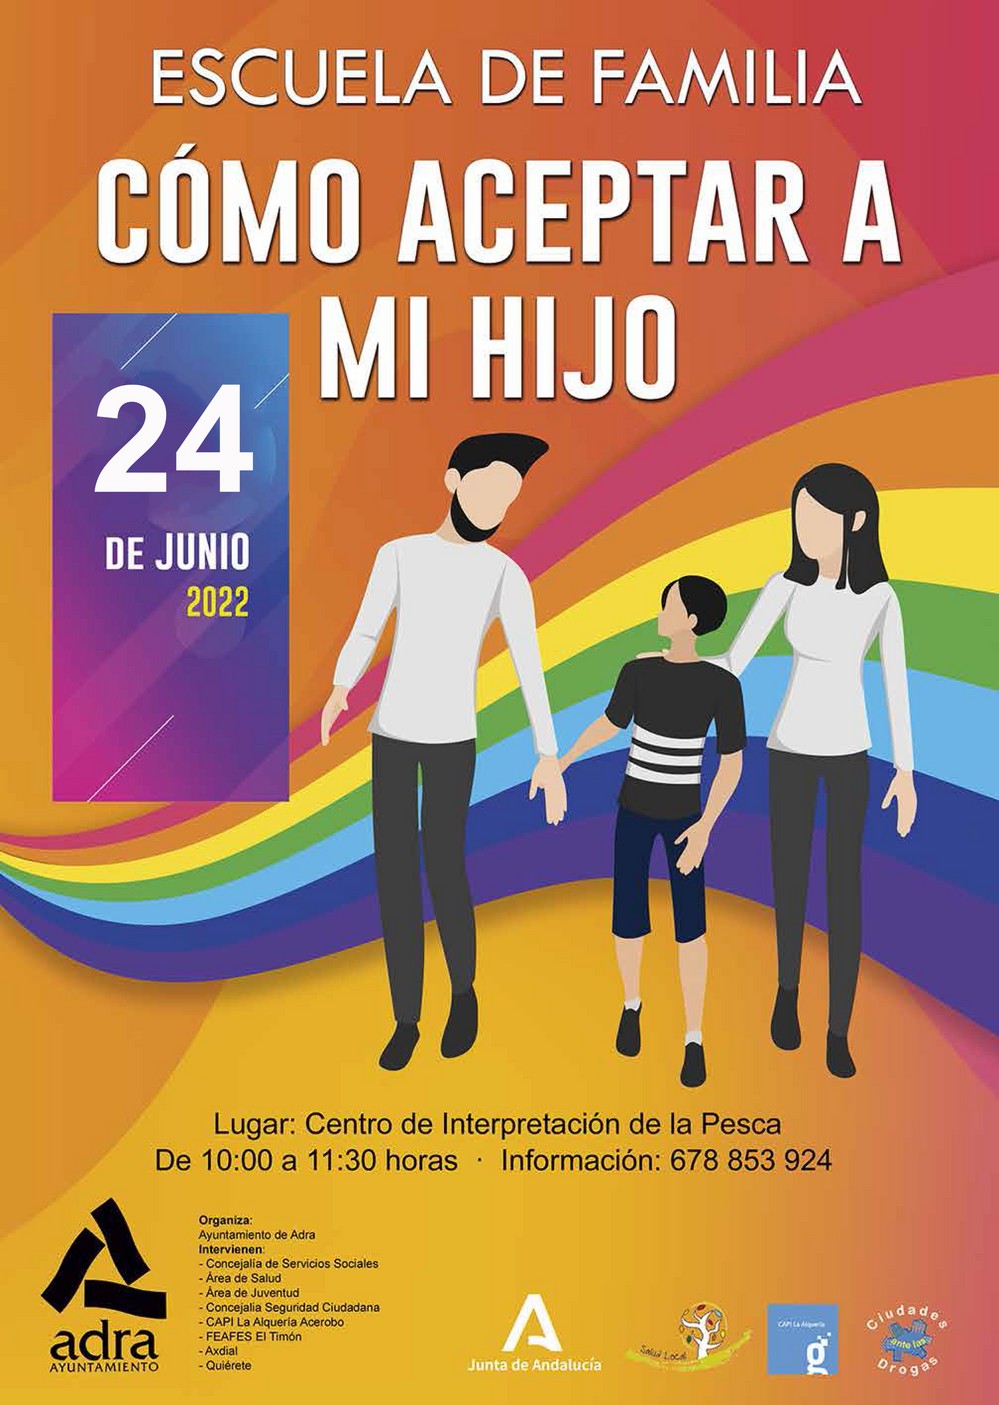 La Escuela de Familia de Adra acoge la charla ‘Cómo aceptar a mi hijo’ enmarcada en el Día Internacional del Orgullo LGTBI